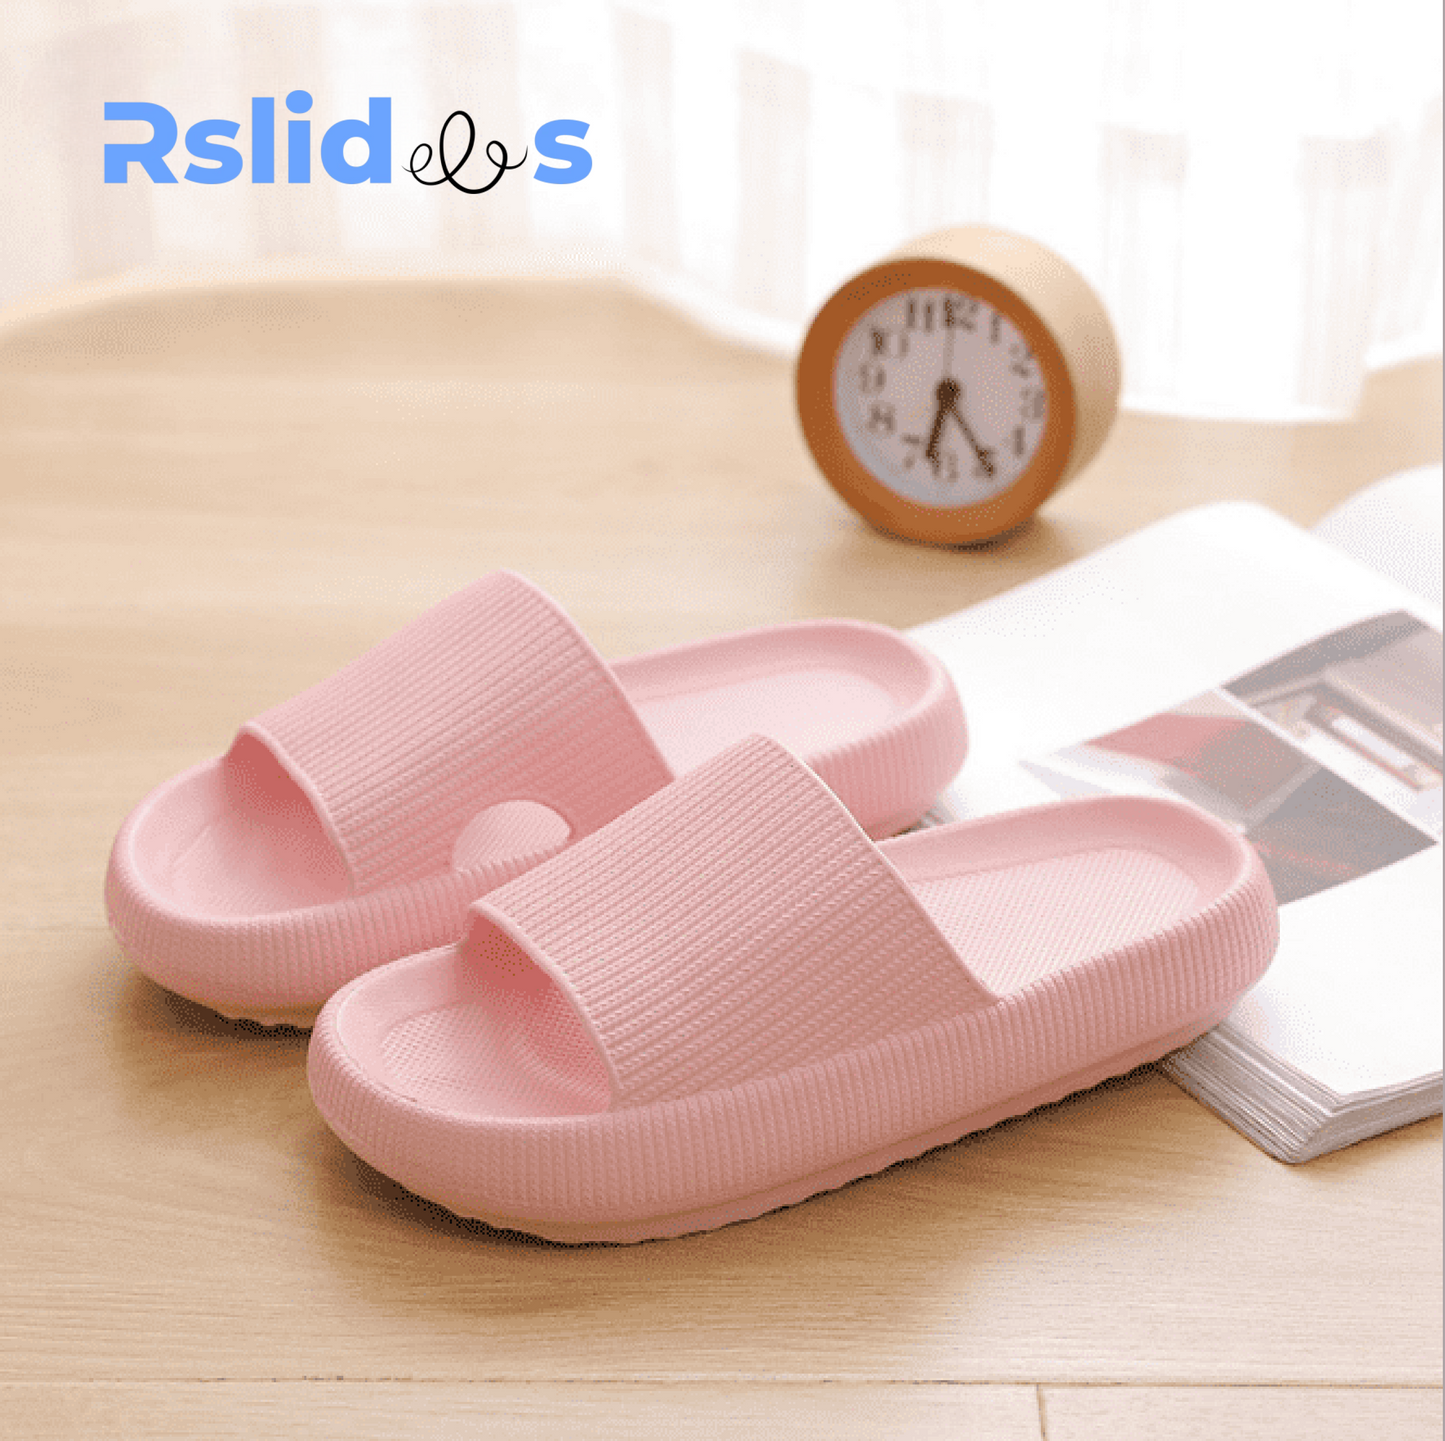 The Rslides ™: Cloud sandals